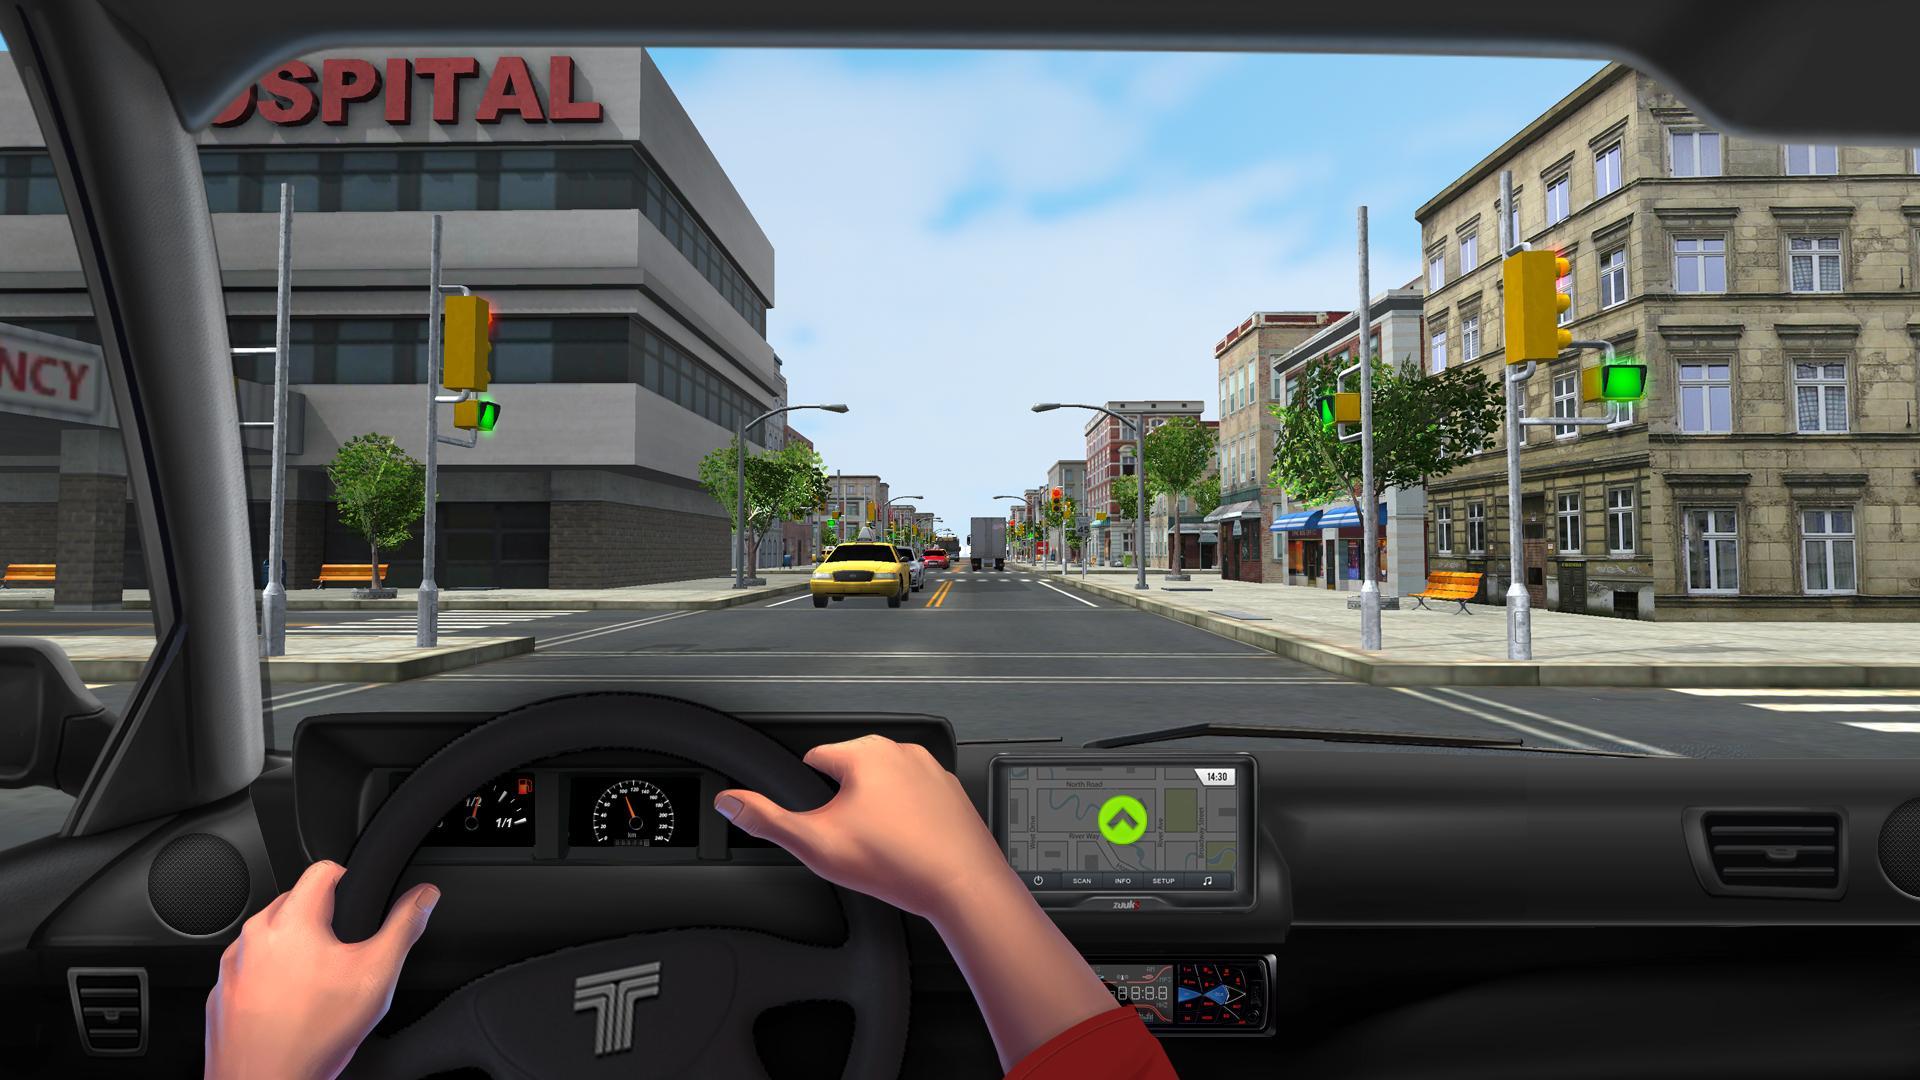 Driver 3 game. Сити драйв. CITYDRIVE игра. Игра Driving 3. City Drive игры на андроид.